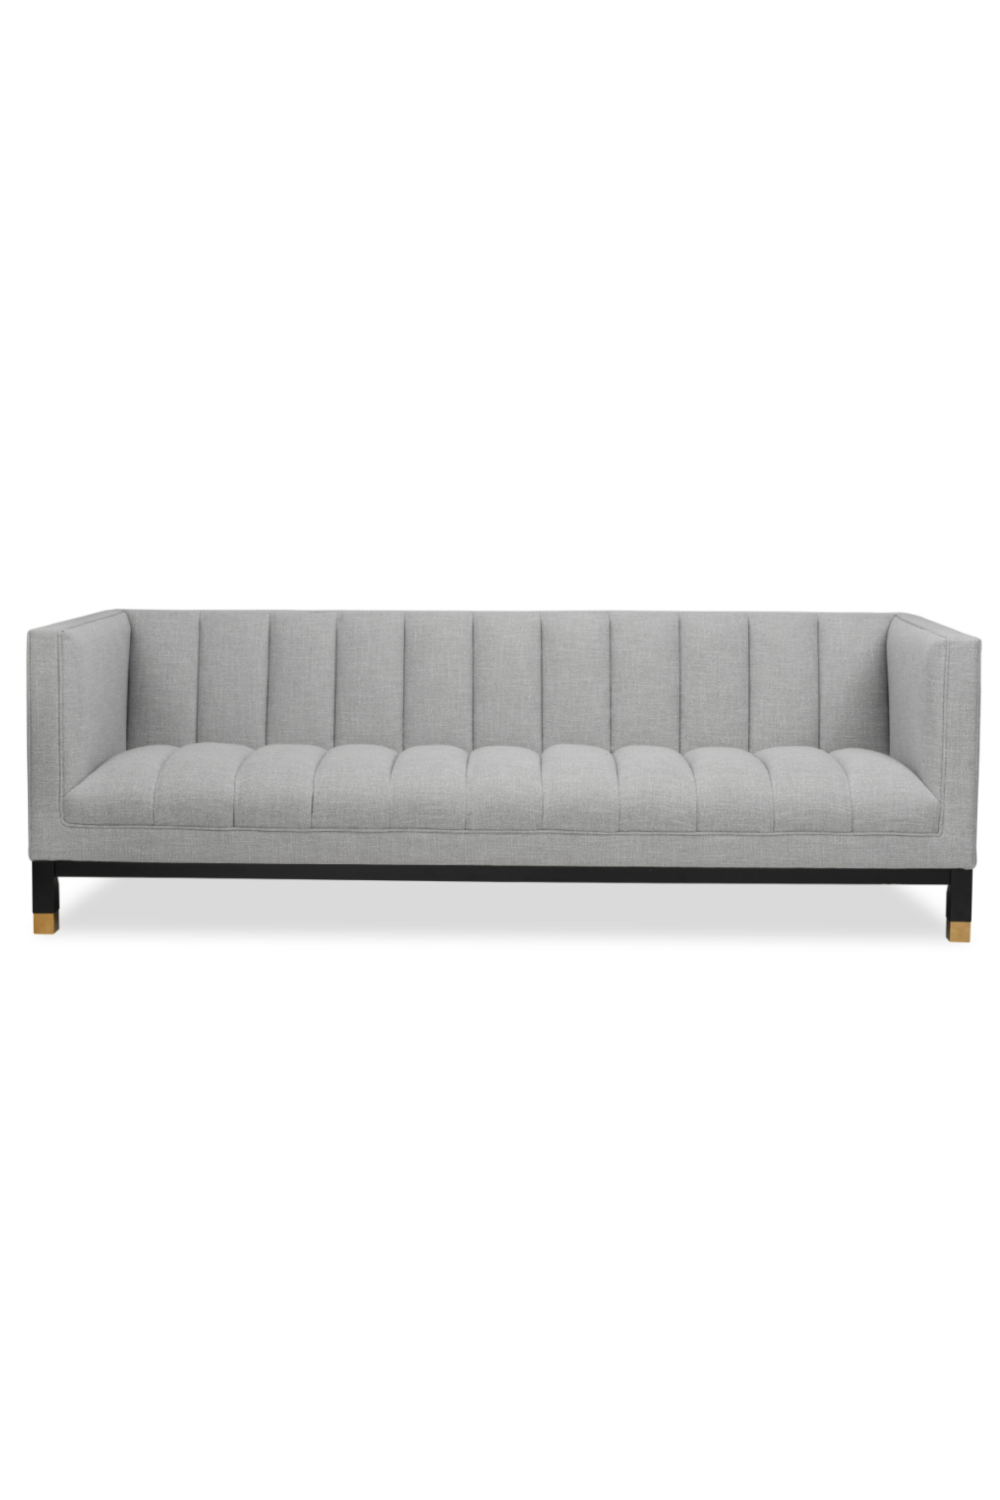 Gray 4-Seater Sofa | Liang & Eimil Gamal | Oroa.com